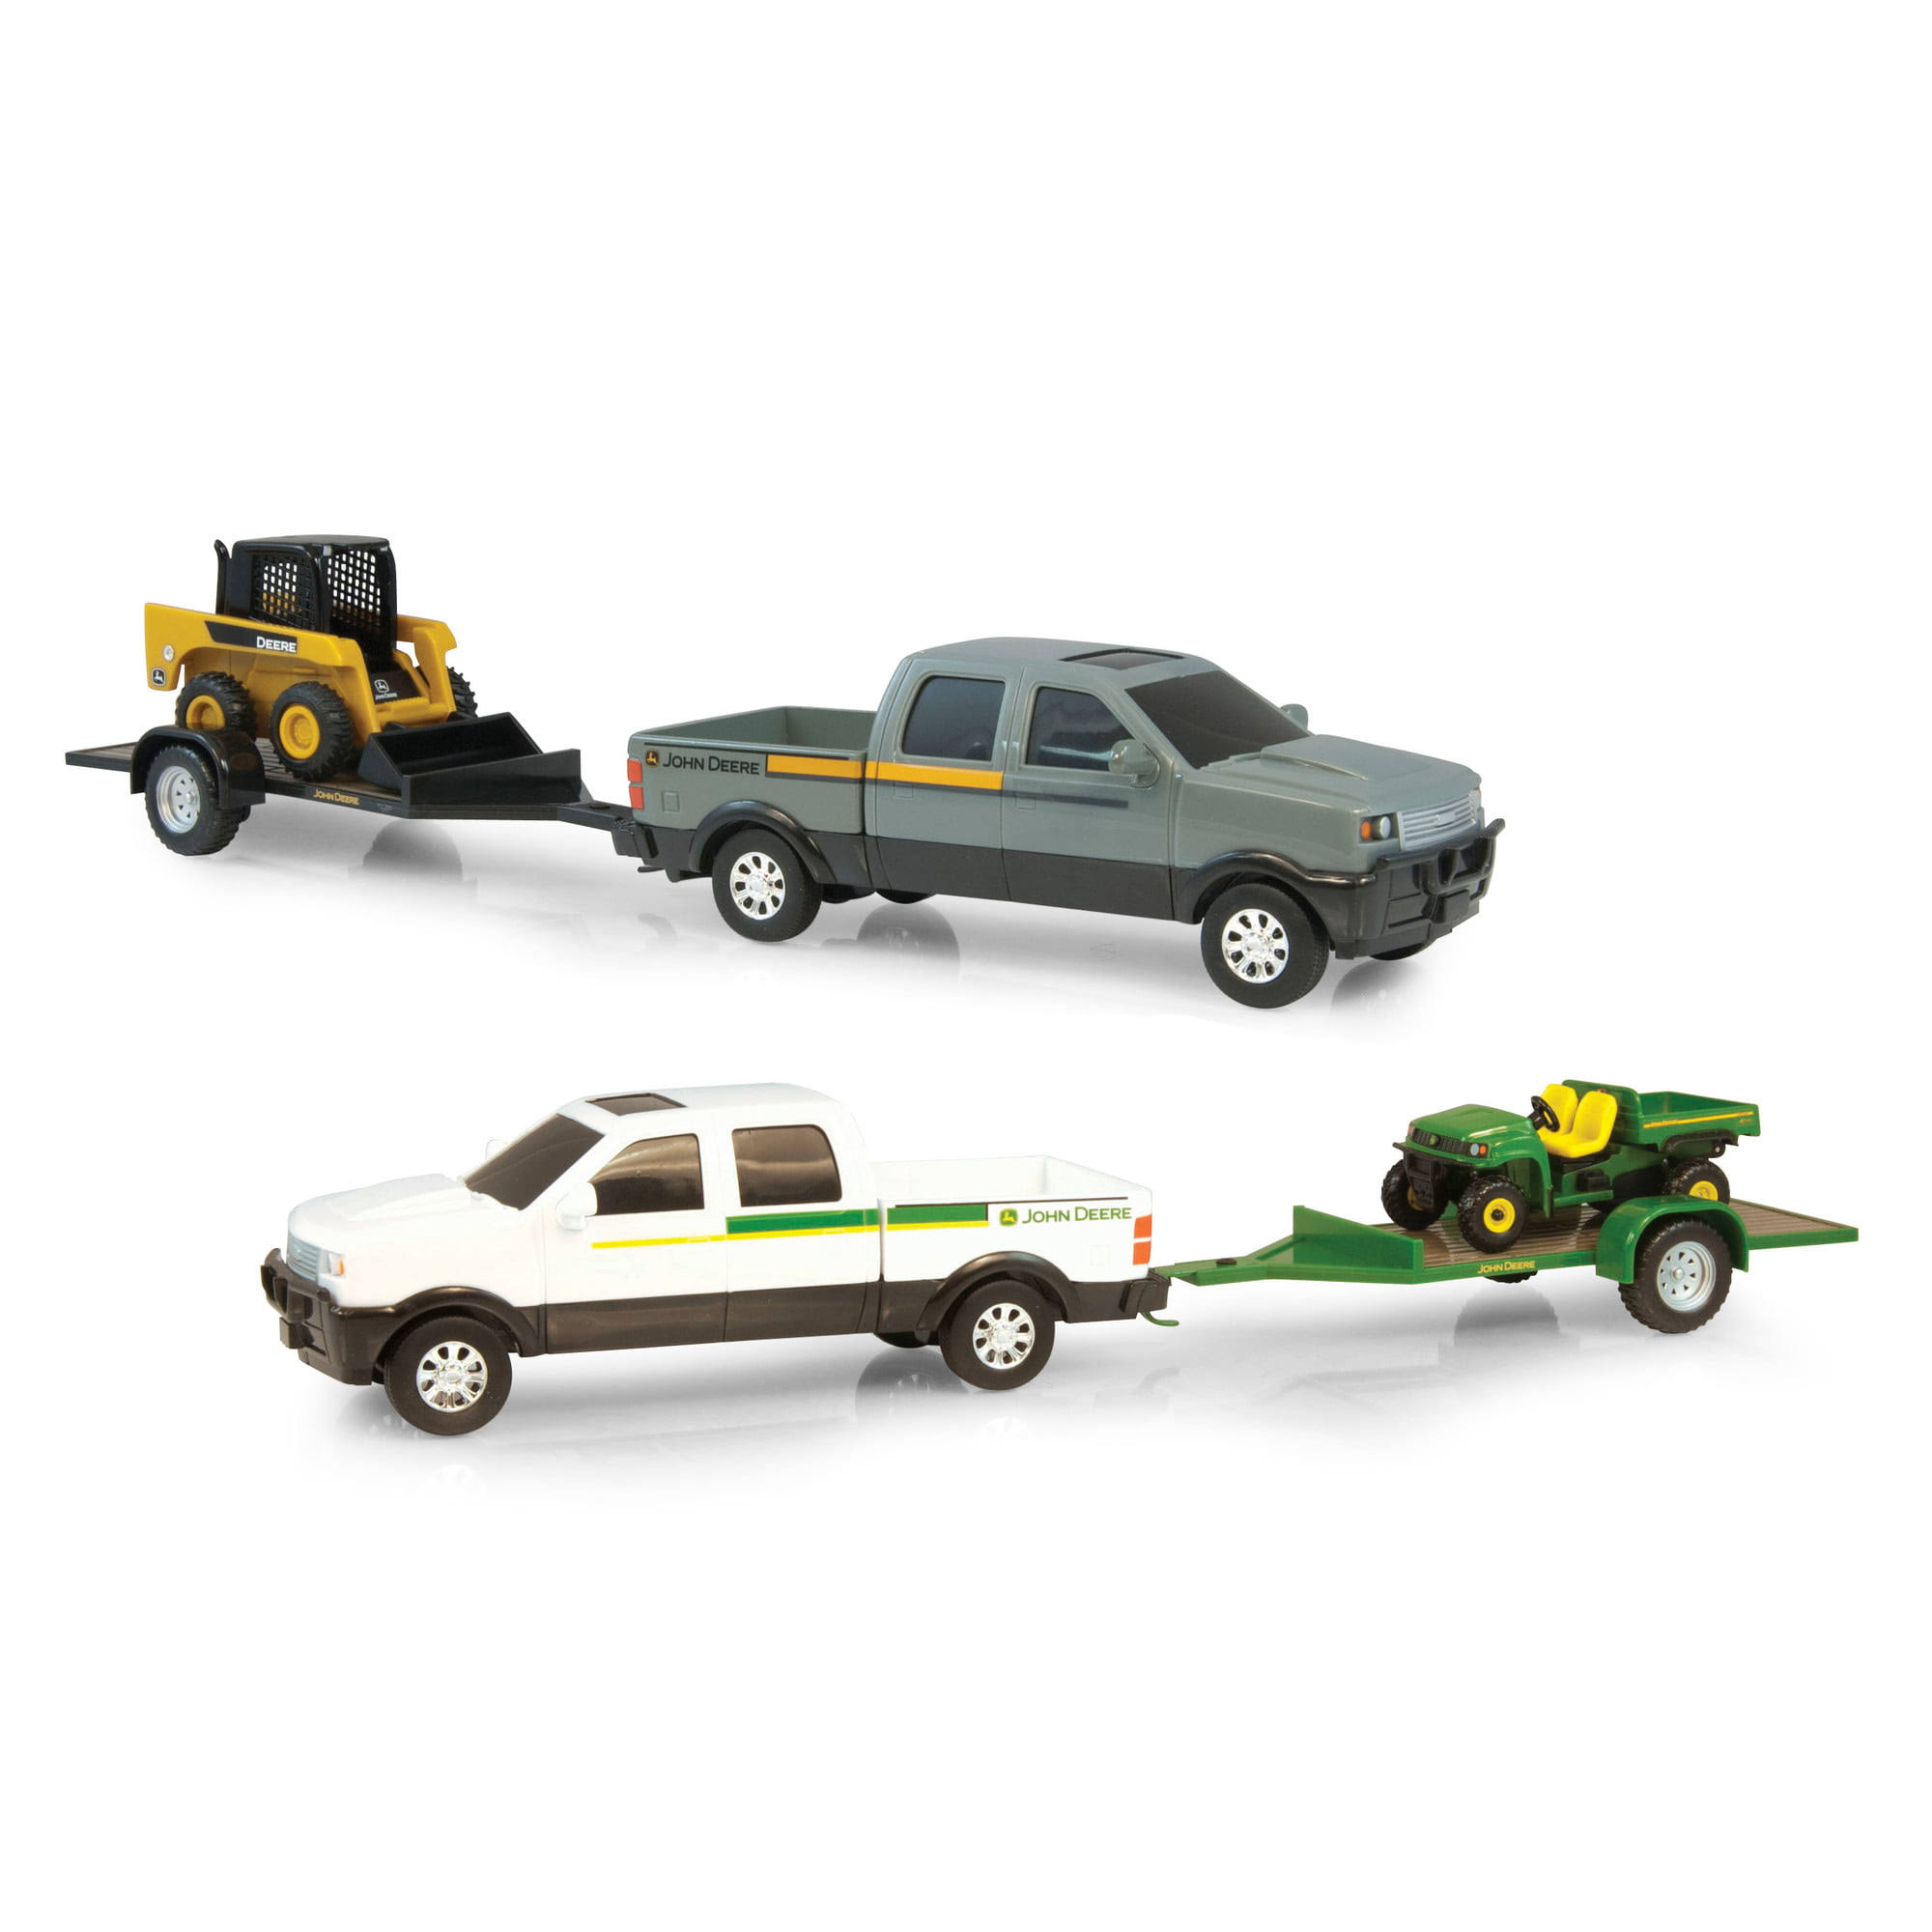 Tomy John Deere Pickup Hauling Car Toy Set